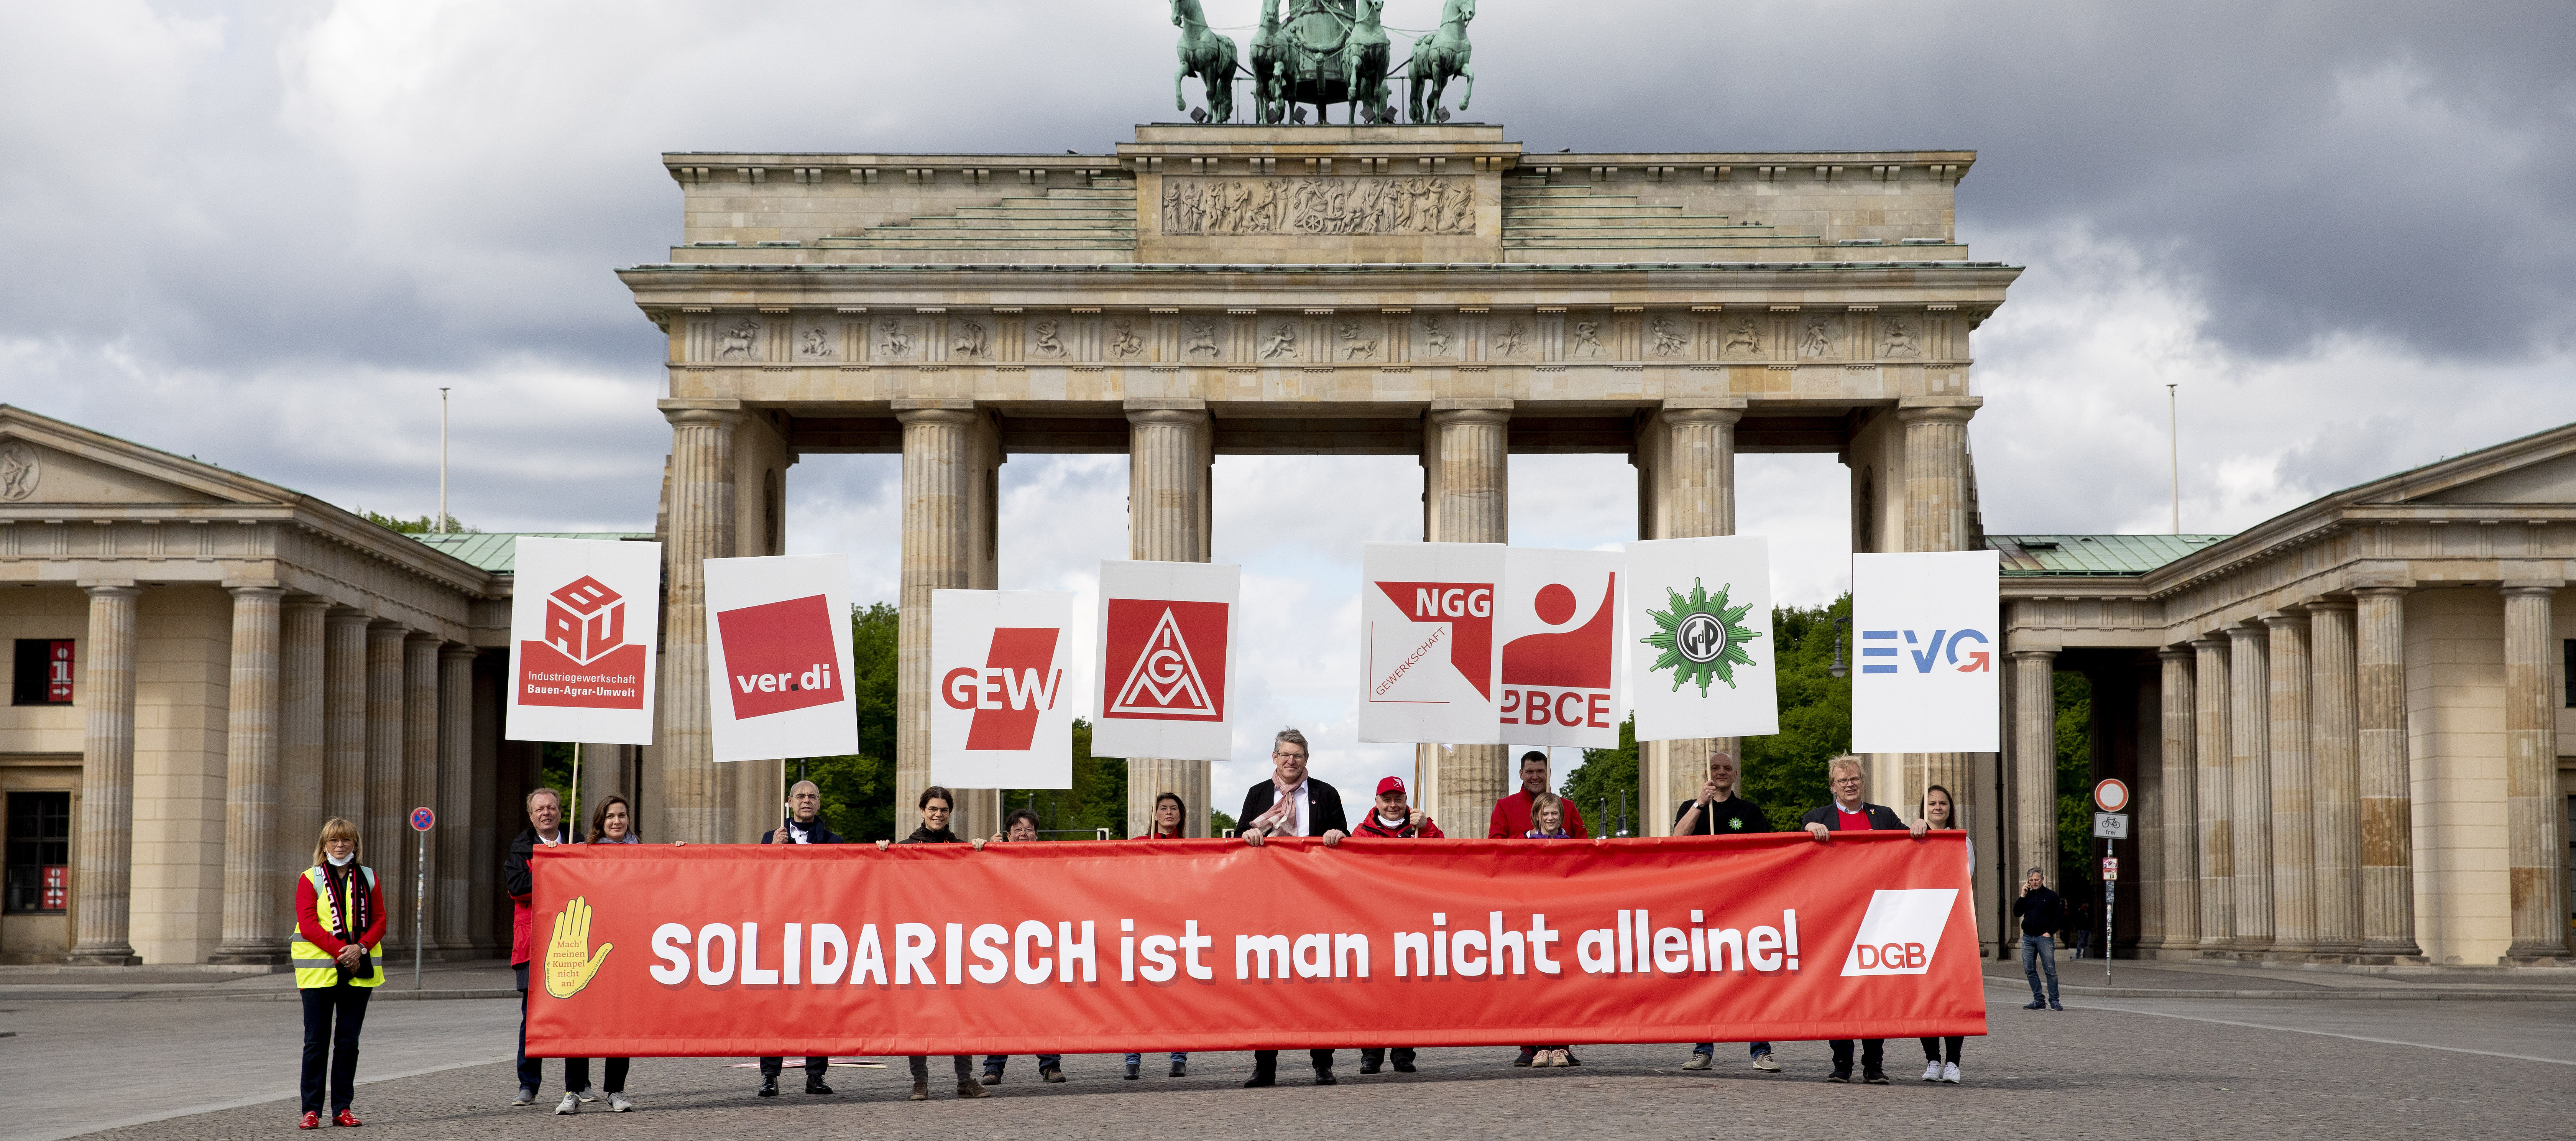 Foto mit Personen vor dem Brandenburger Tor. Zusammen halten Sie ein Transparent mit dem Schriftzug "Solidarisch ist man nicht alleine". Jede Person hält noch jeweils ein Plakat mit Gewerkschaftslogos.